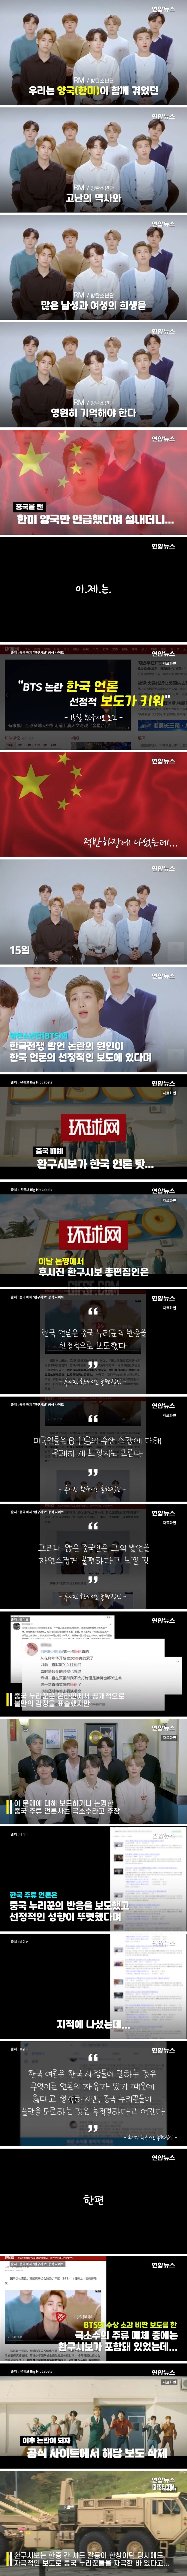 중국 언론의 적반하장…BTS 논란 한국이 키웠다.jpg